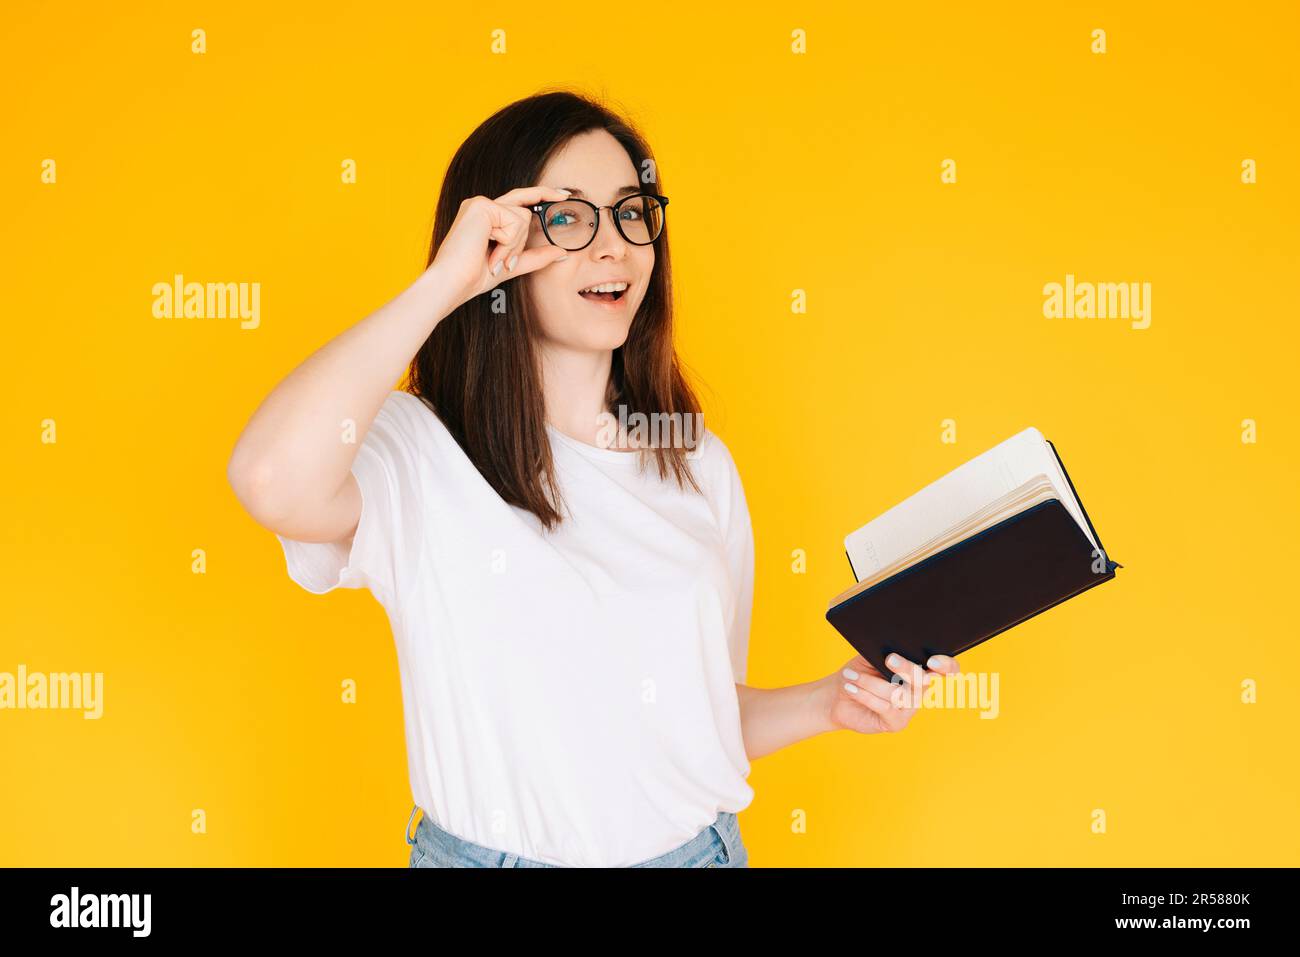 Porträt einer glücklichen jungen Frau, die eine Brille und ein weißes T-Shirt trägt, in ein Buch mit offenem Mund eingetaucht, isoliert auf gelbem Hintergrund. Stockfoto